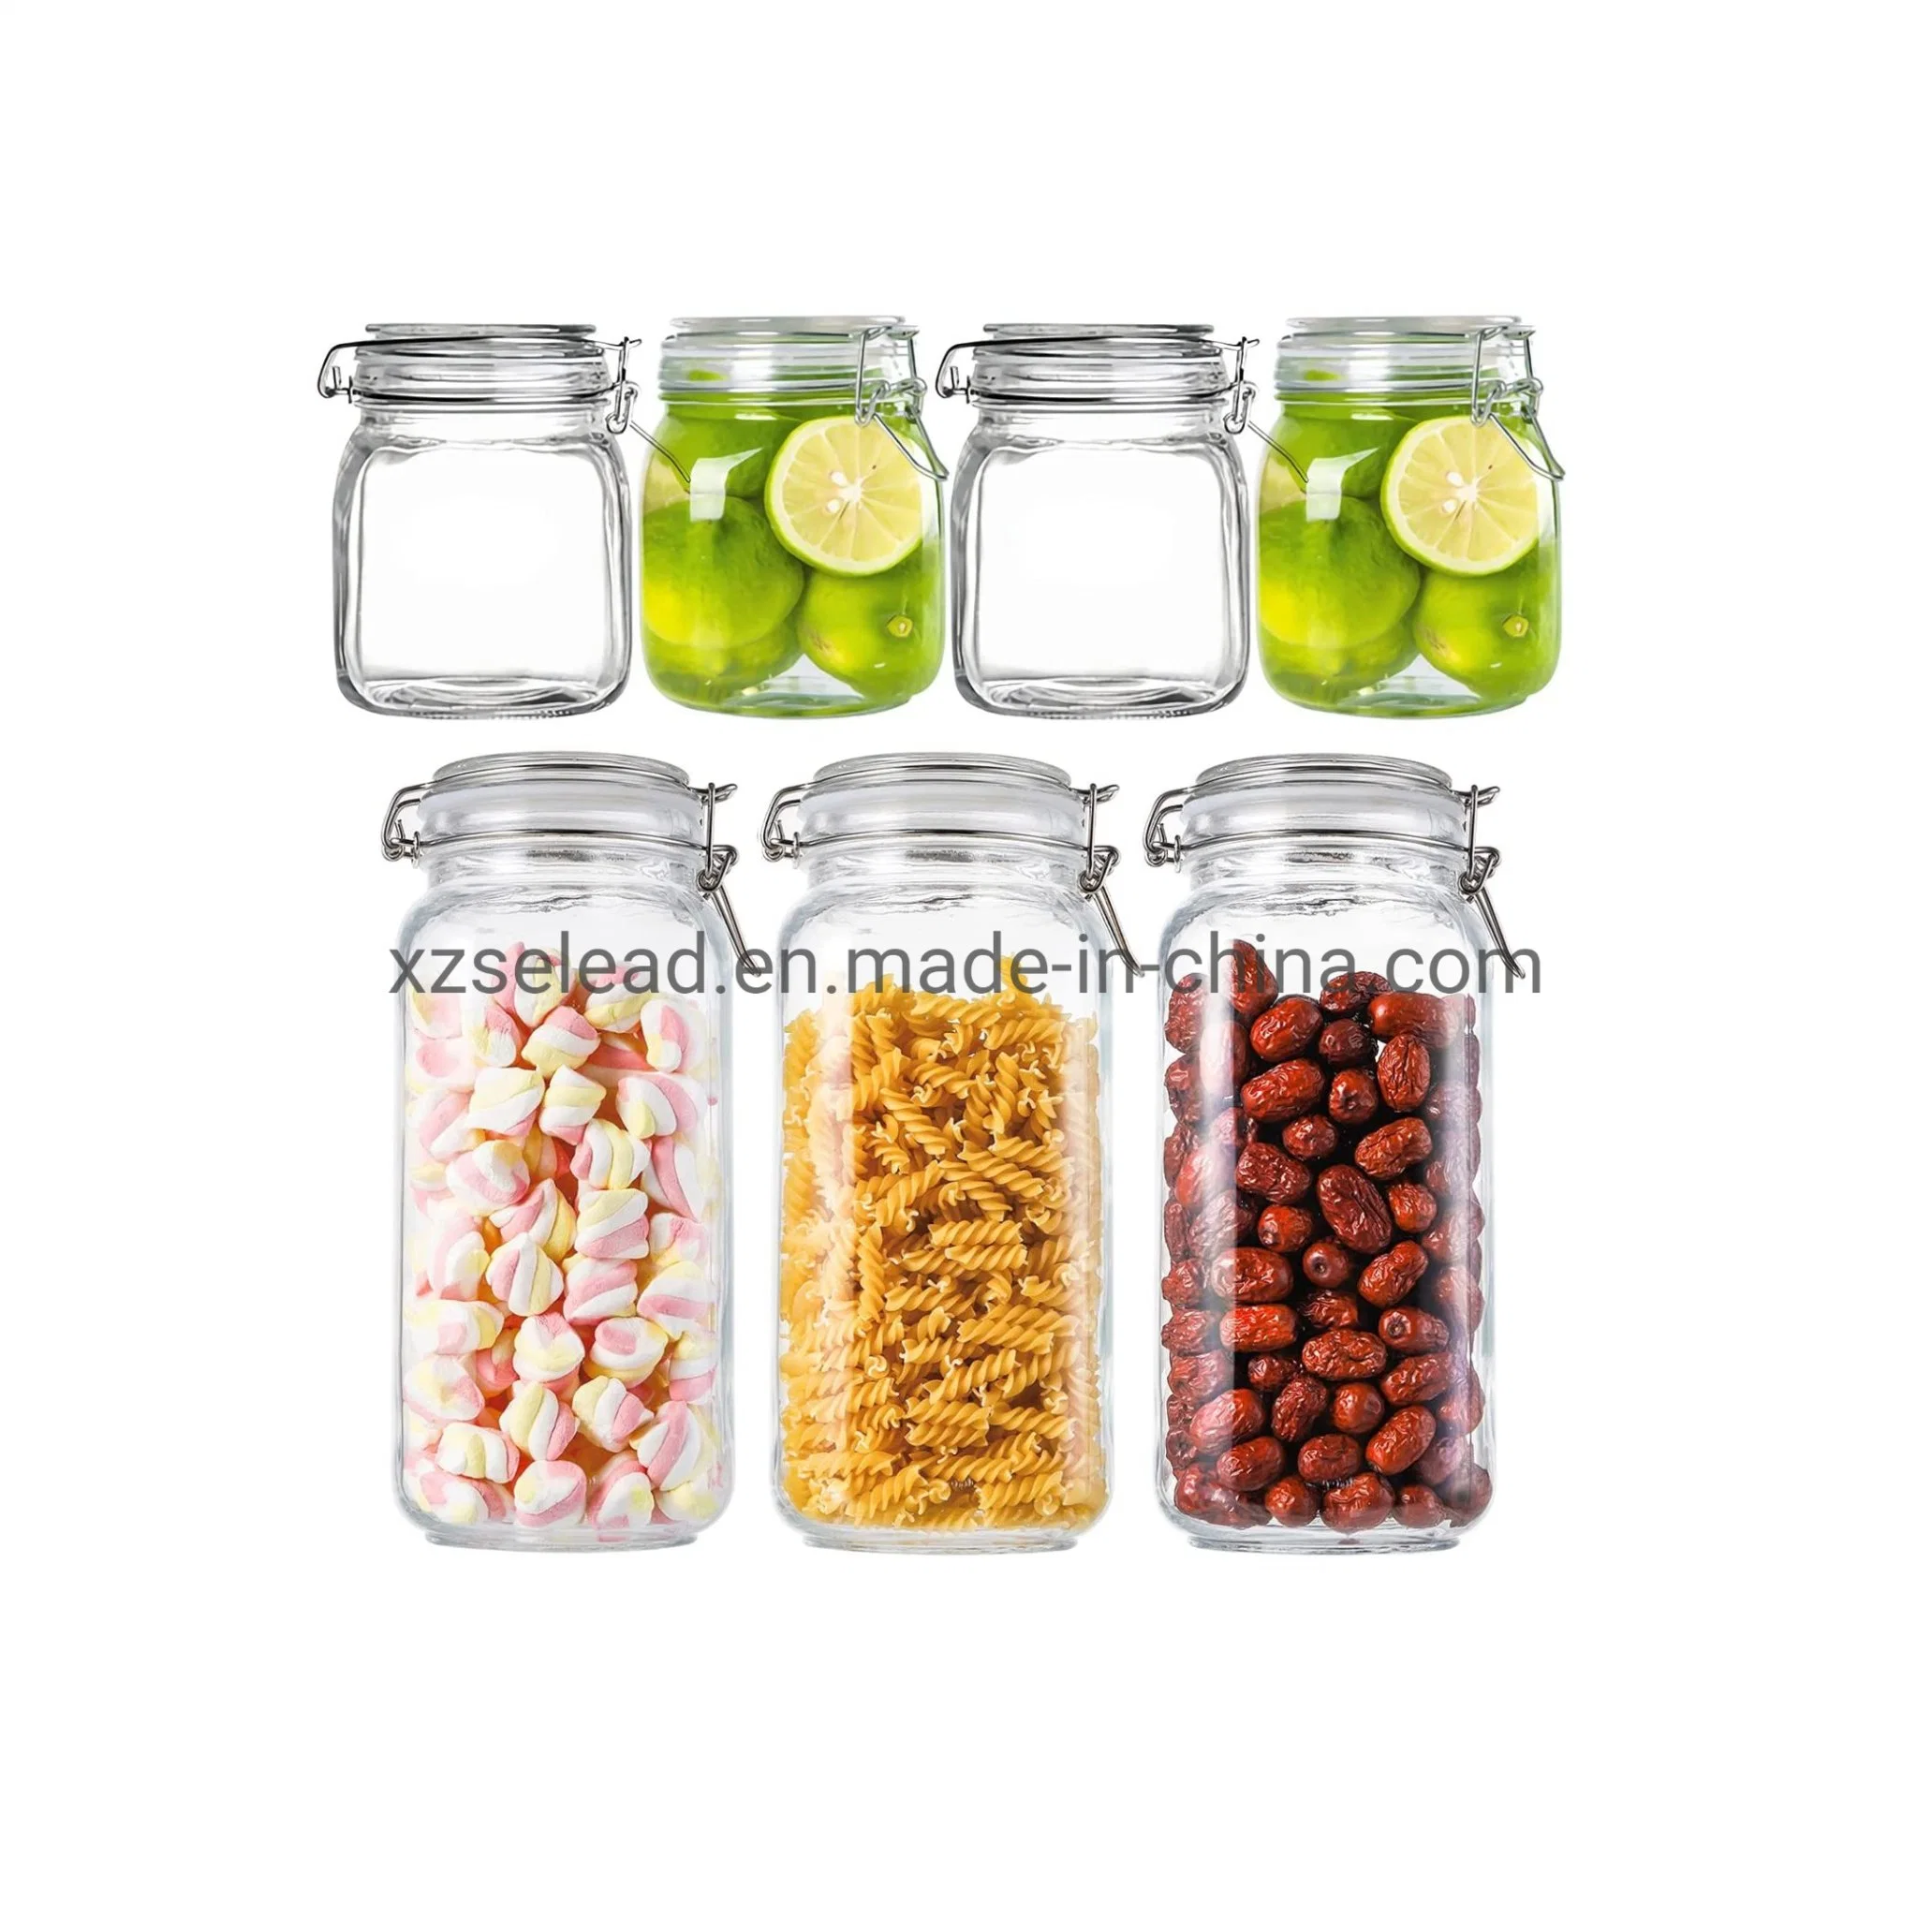 Almacenamiento de vidrio jarra de vidrio con tapa de cristal para el almacenamiento de alimentos el uso de cocina